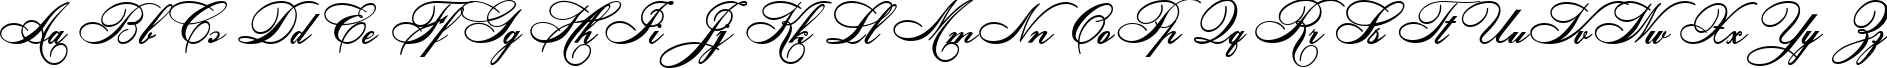 Пример написания английского алфавита шрифтом Ludvig van Bethoveen